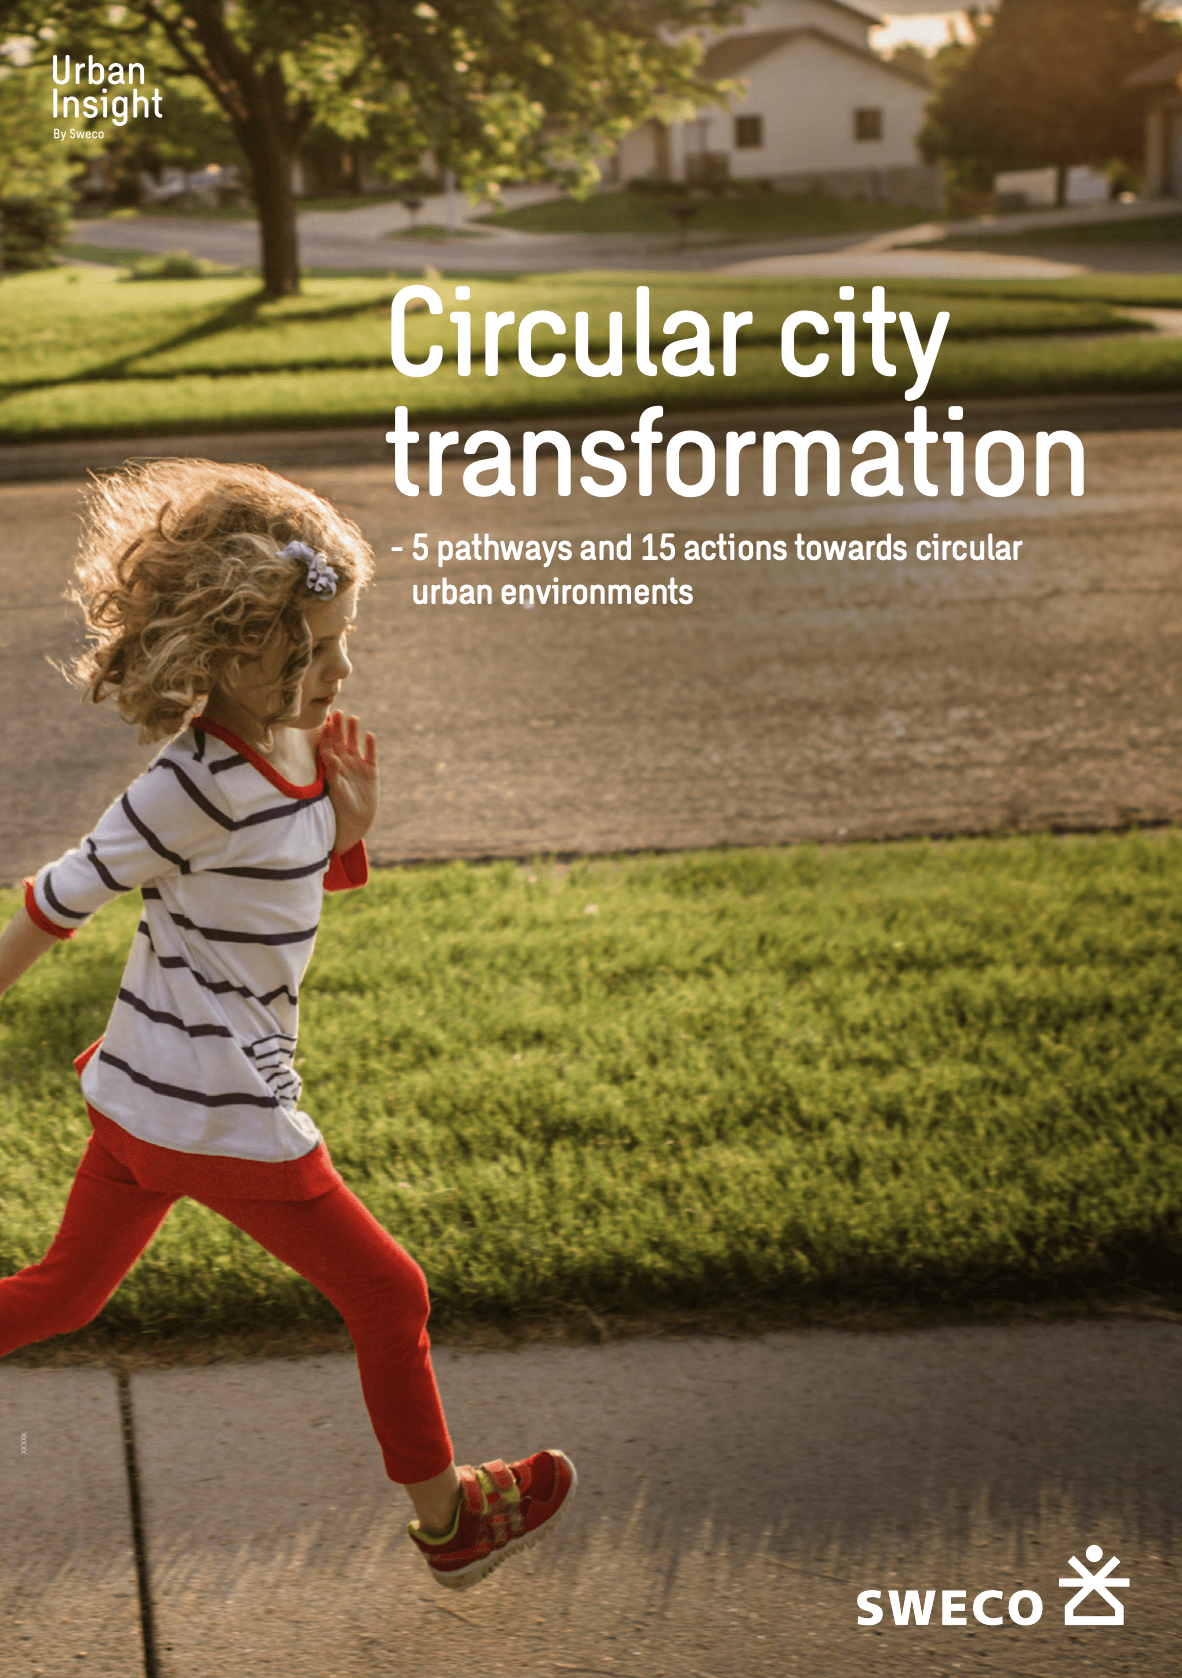 Sweco: Circular city transformation